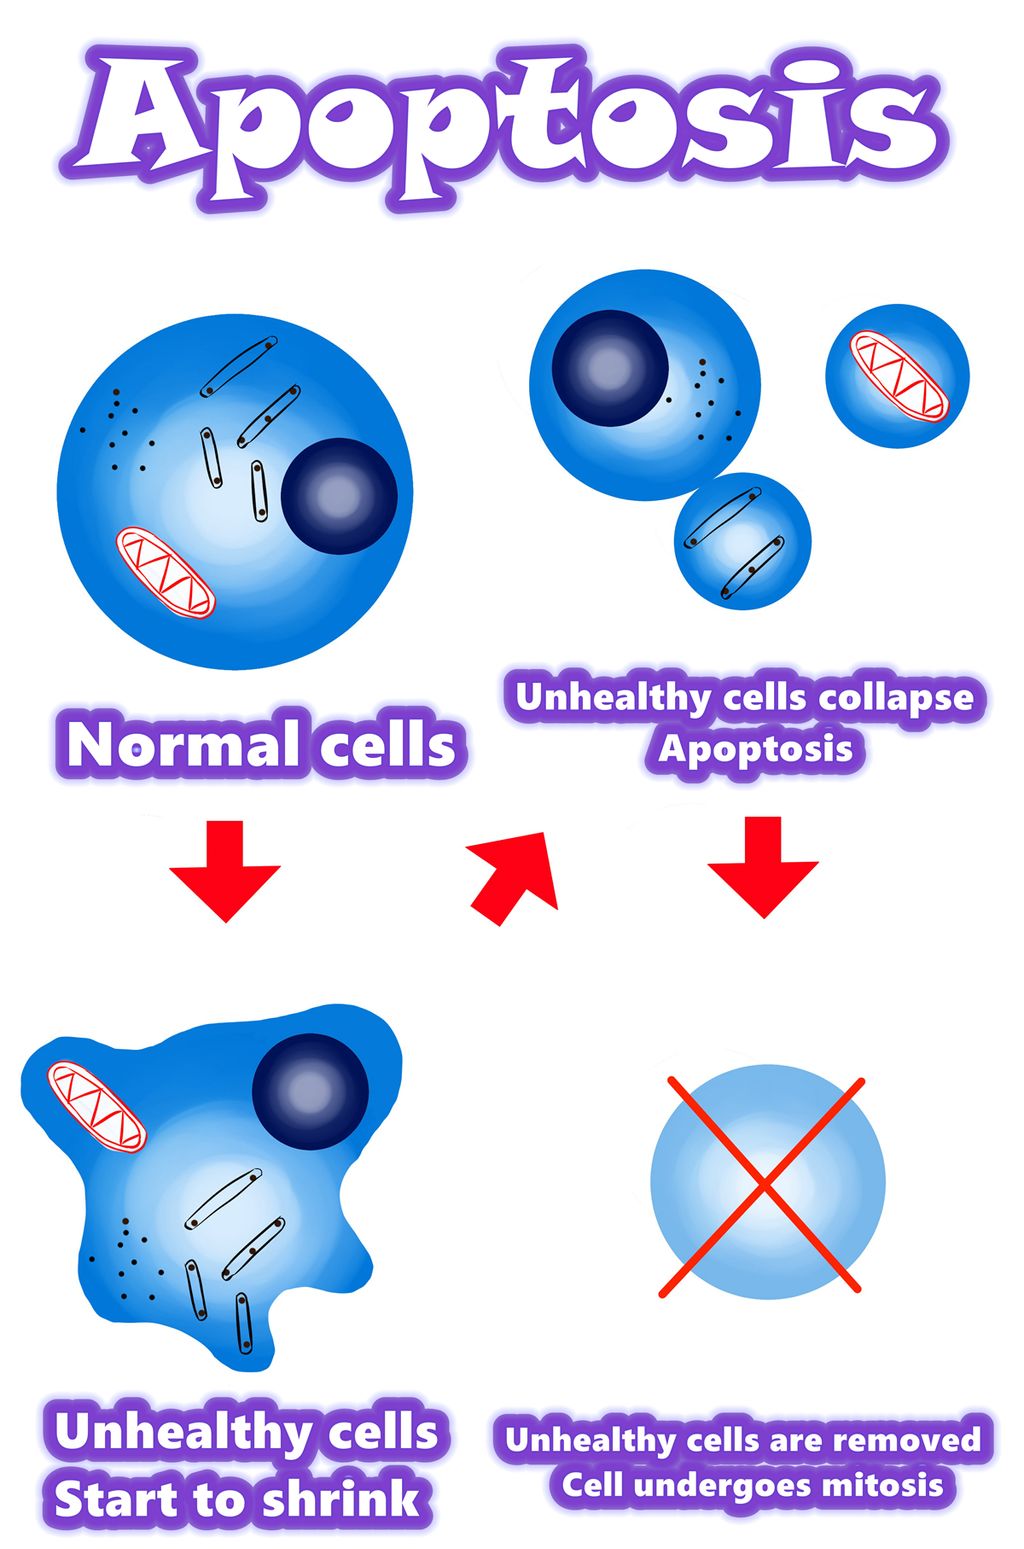 Solamargine | A legjobb megoldás a rákos sejtek számára 2021-ben | Apoptózis és rákos sejtek Apoptózis vs rendellenes sejtek | Apoptózis és mutáns sejtek | Áttekintés / Összefoglalás / Az apoptózis mechanizmusa